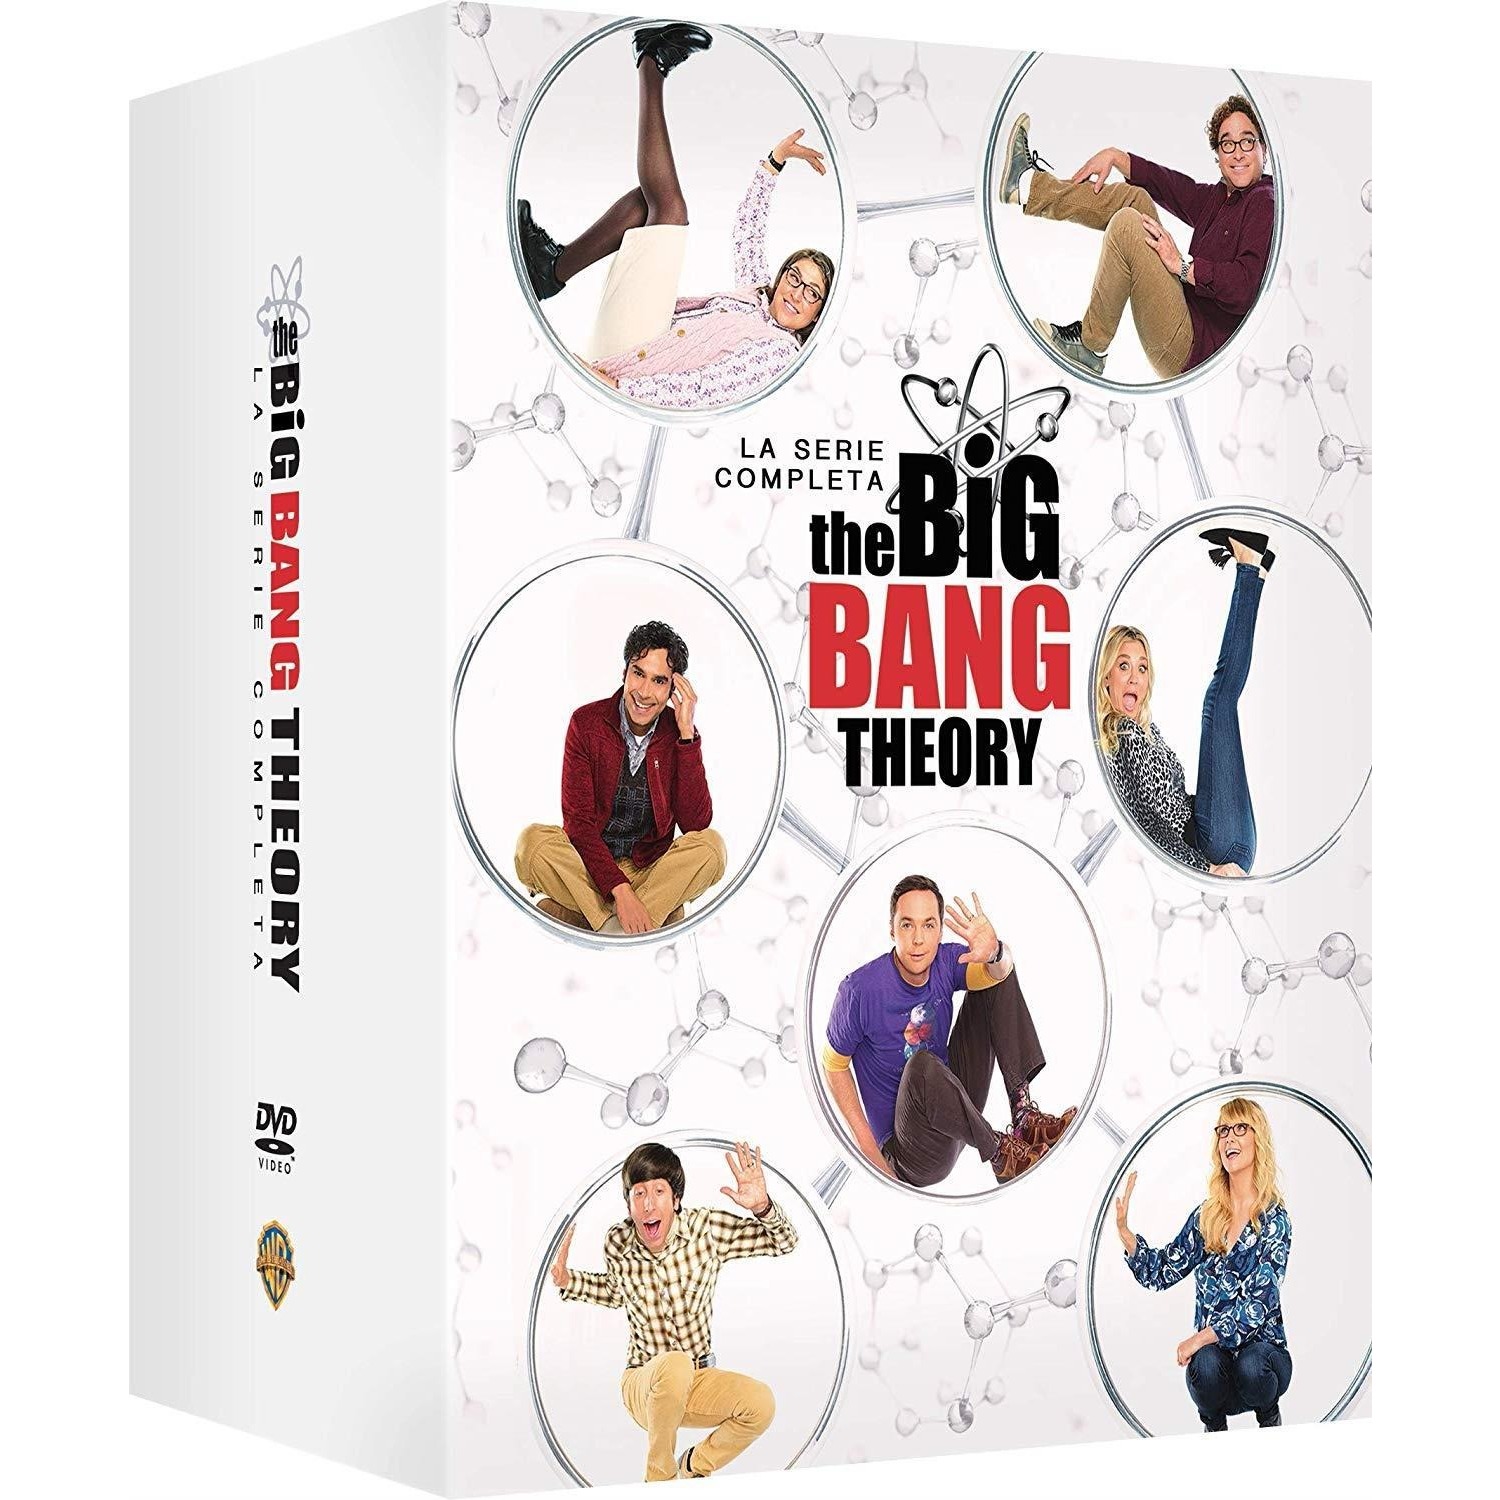 Immagine per Serie TV DVD The big bang theory: La serie completa (1-12) da DIMOStore